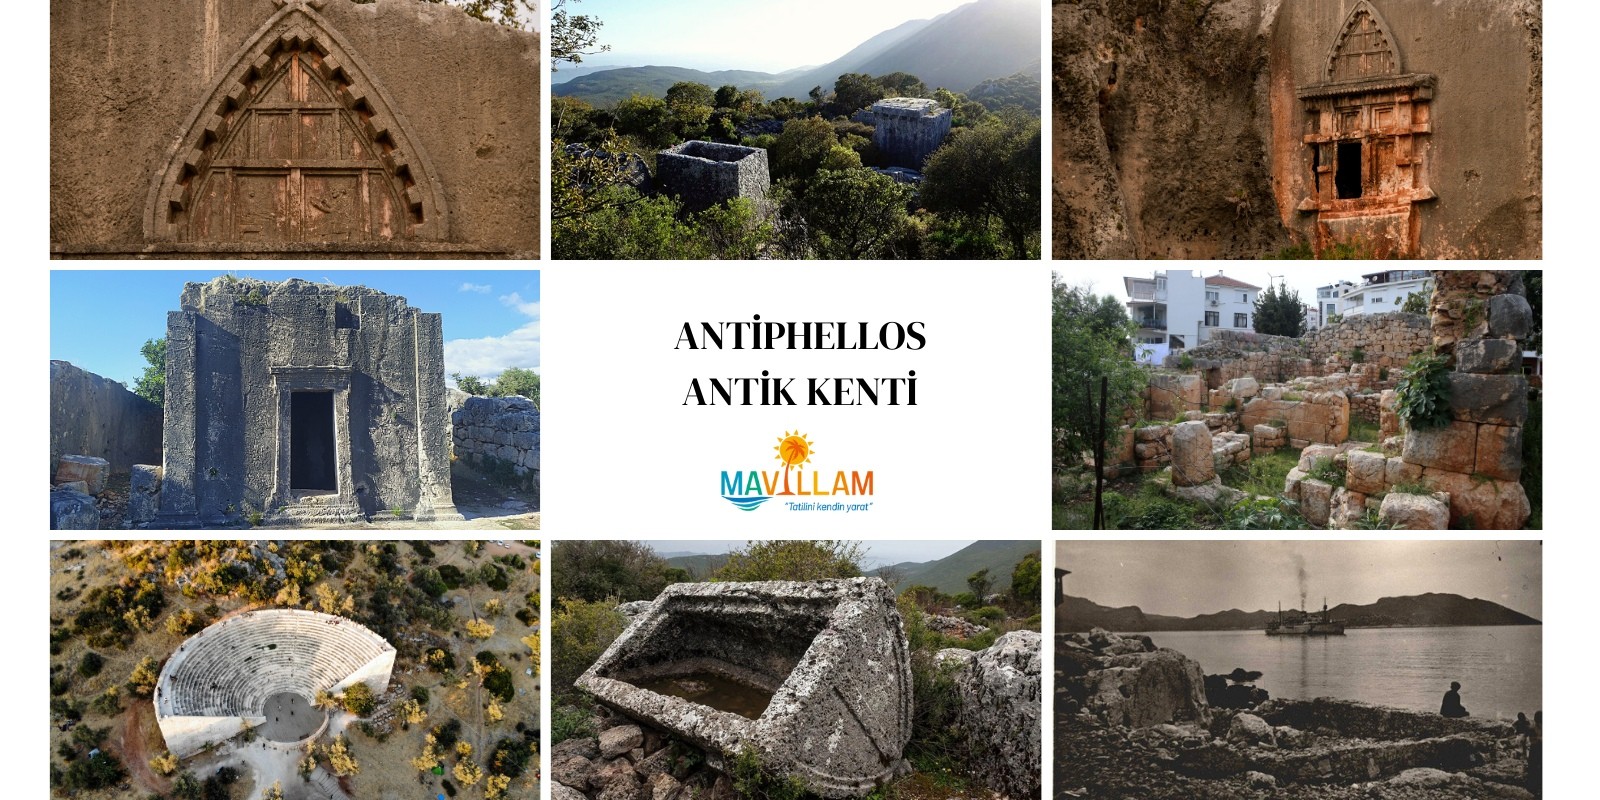 Antiphellos Antik Kenti - Antik Kentler Serisi